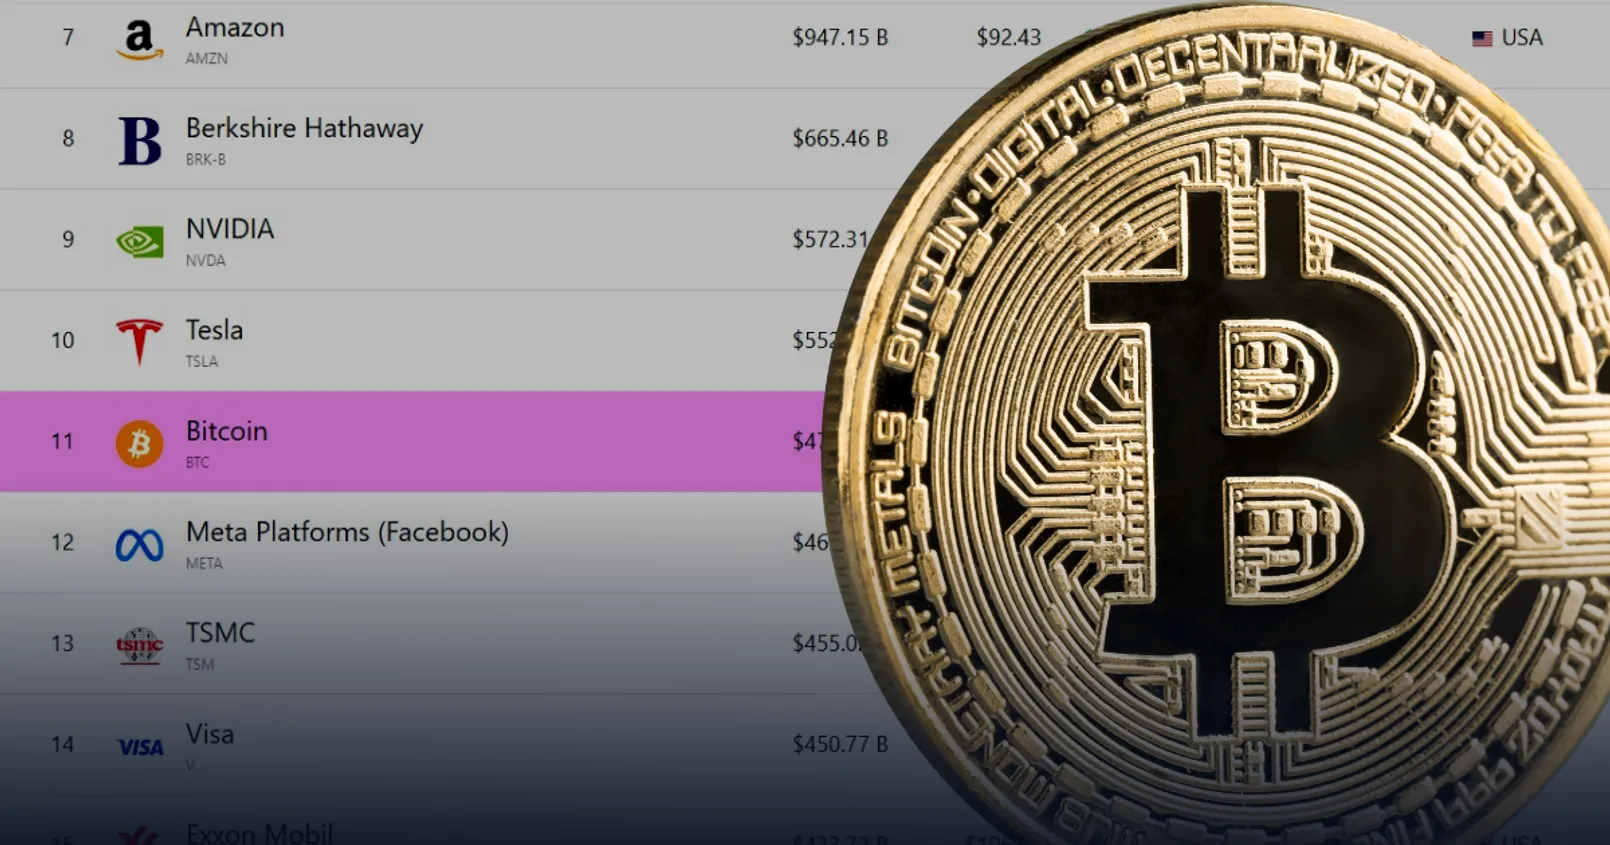 Bitcoin ทำมูลค่าตลาดแซงหน้า Meta ภายใน 24 ชั่วโมง